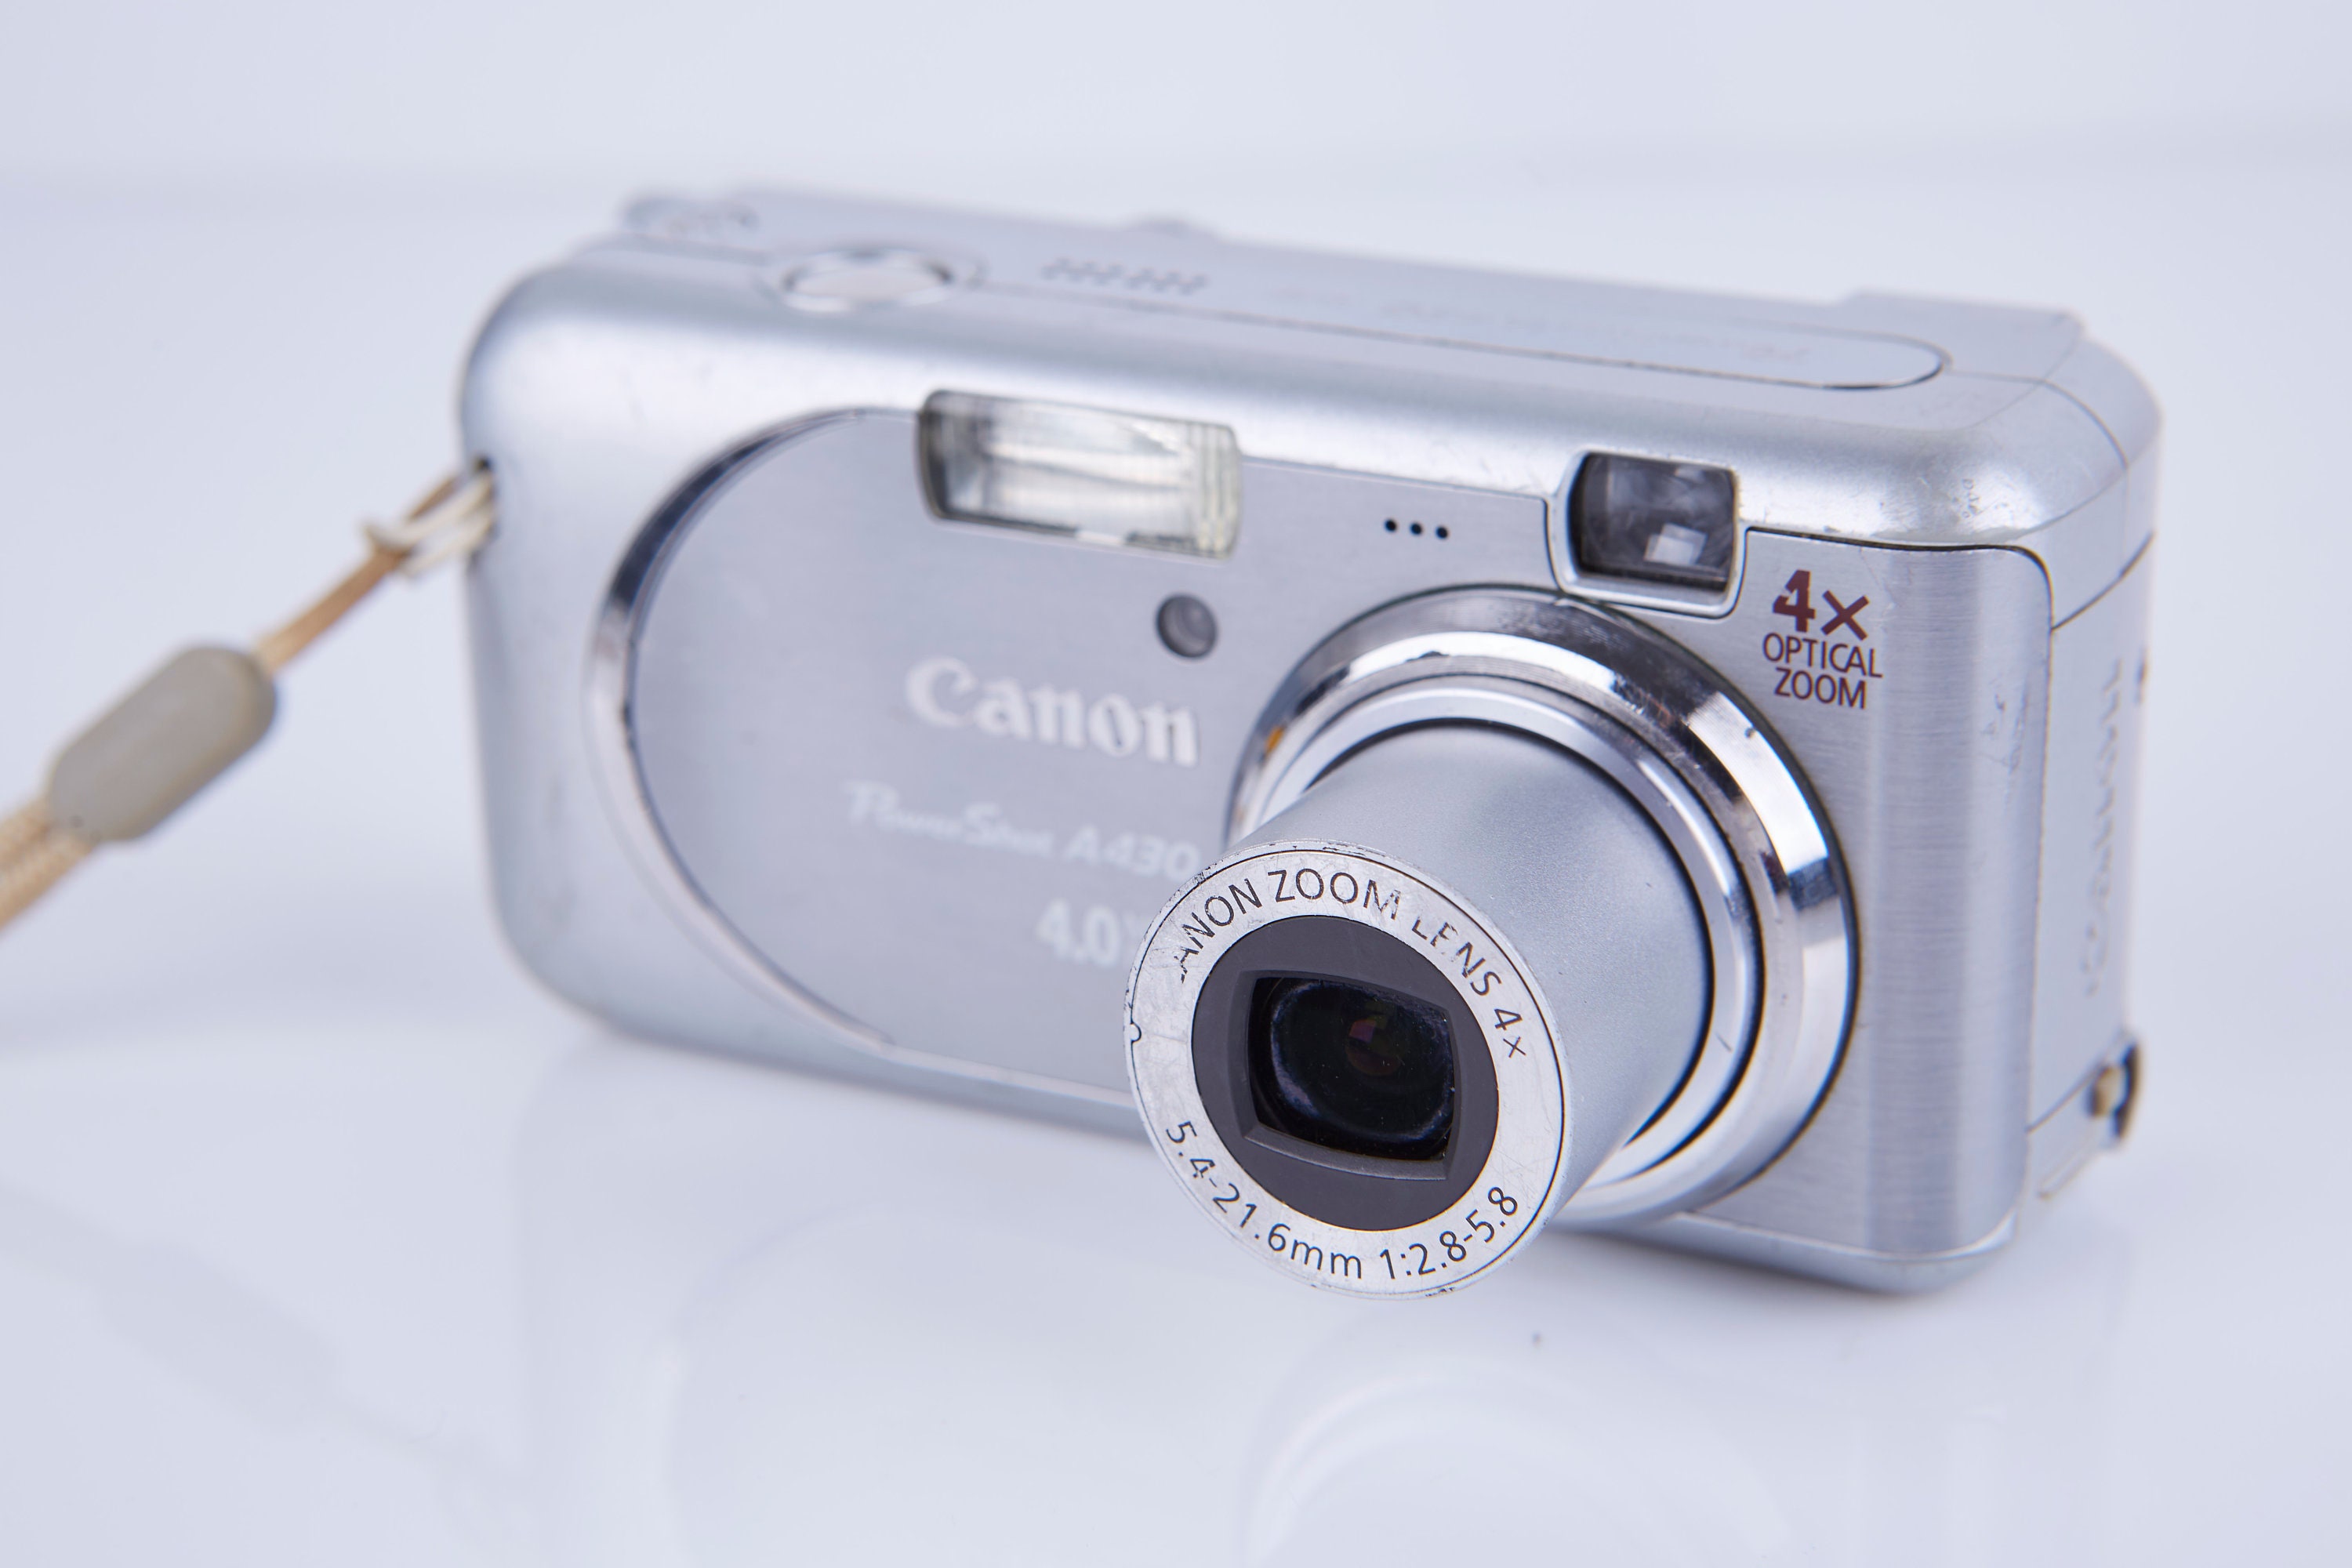 Canon PowerShot A430 - Cámara digital de 4 MP con zoom óptico 4x